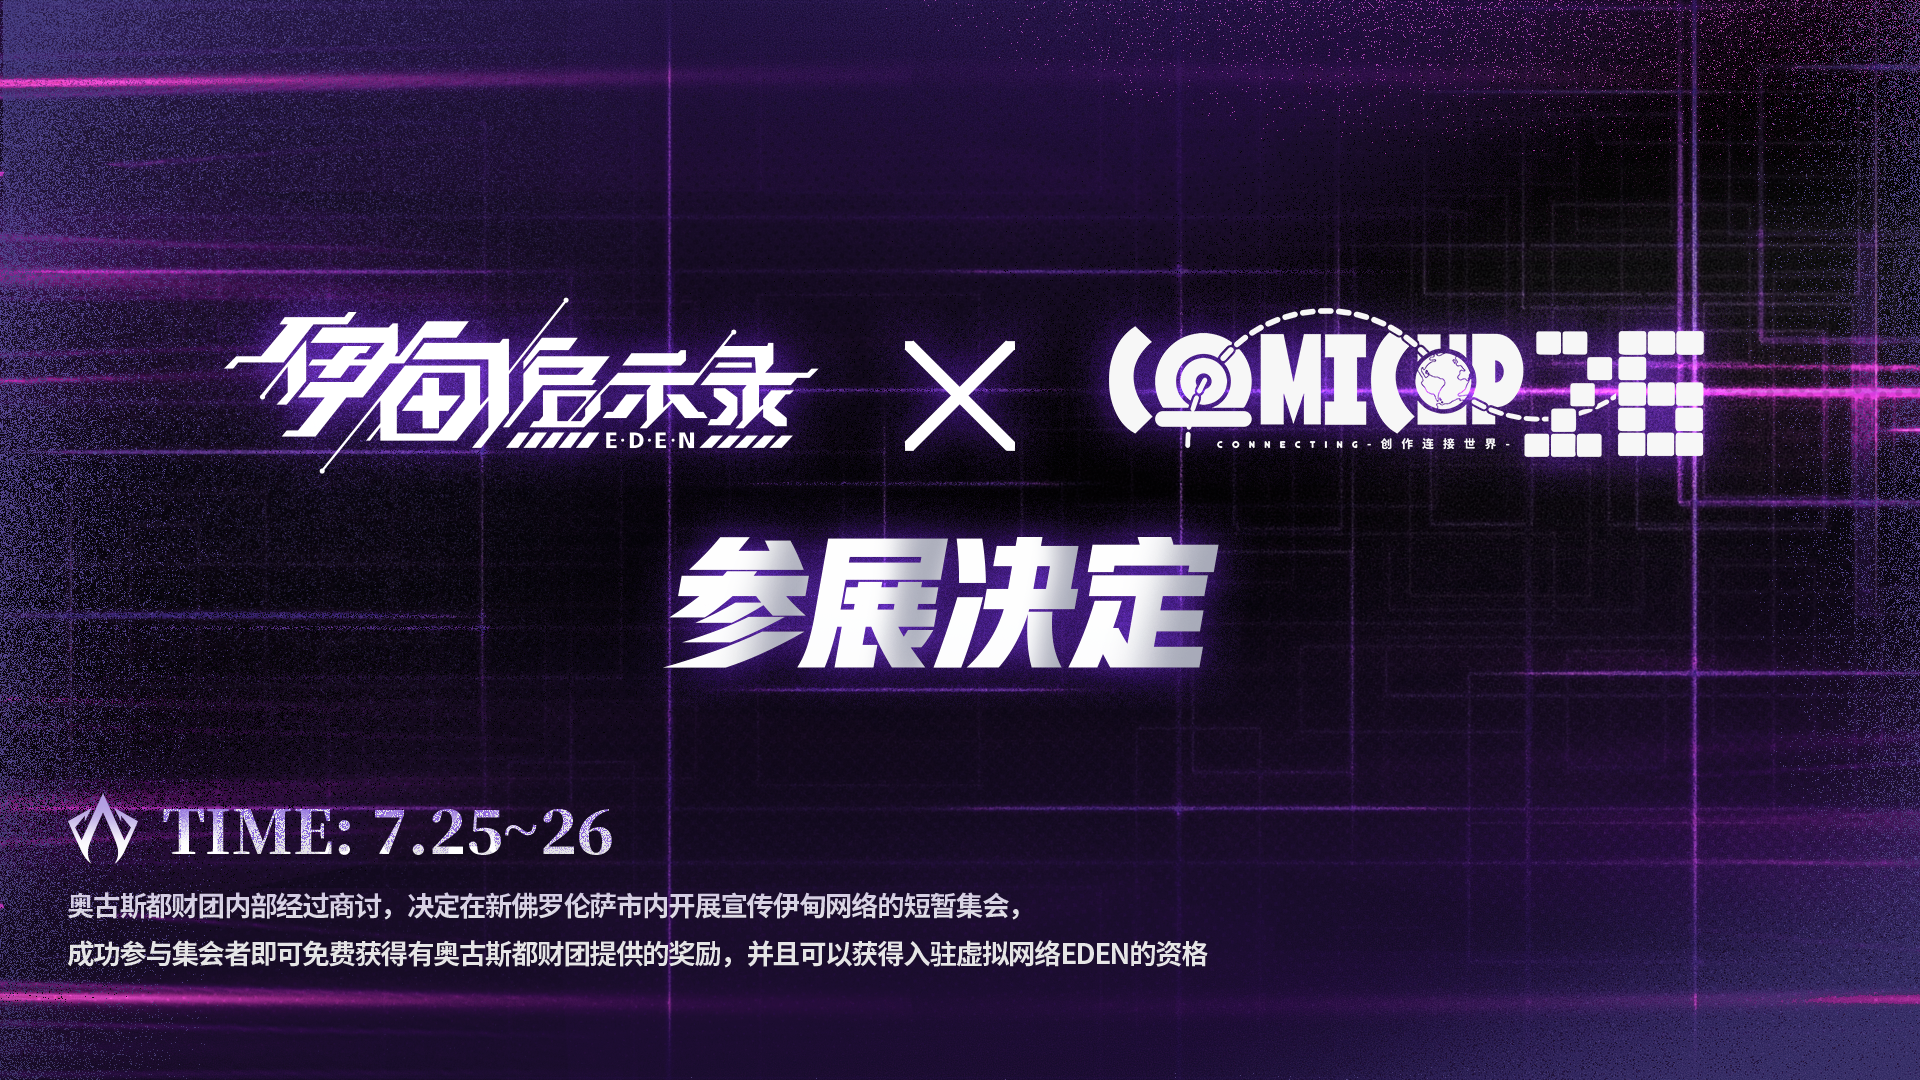 【参展决定】「上海COMICUP 26」&「上海CCG EXPO 2020」